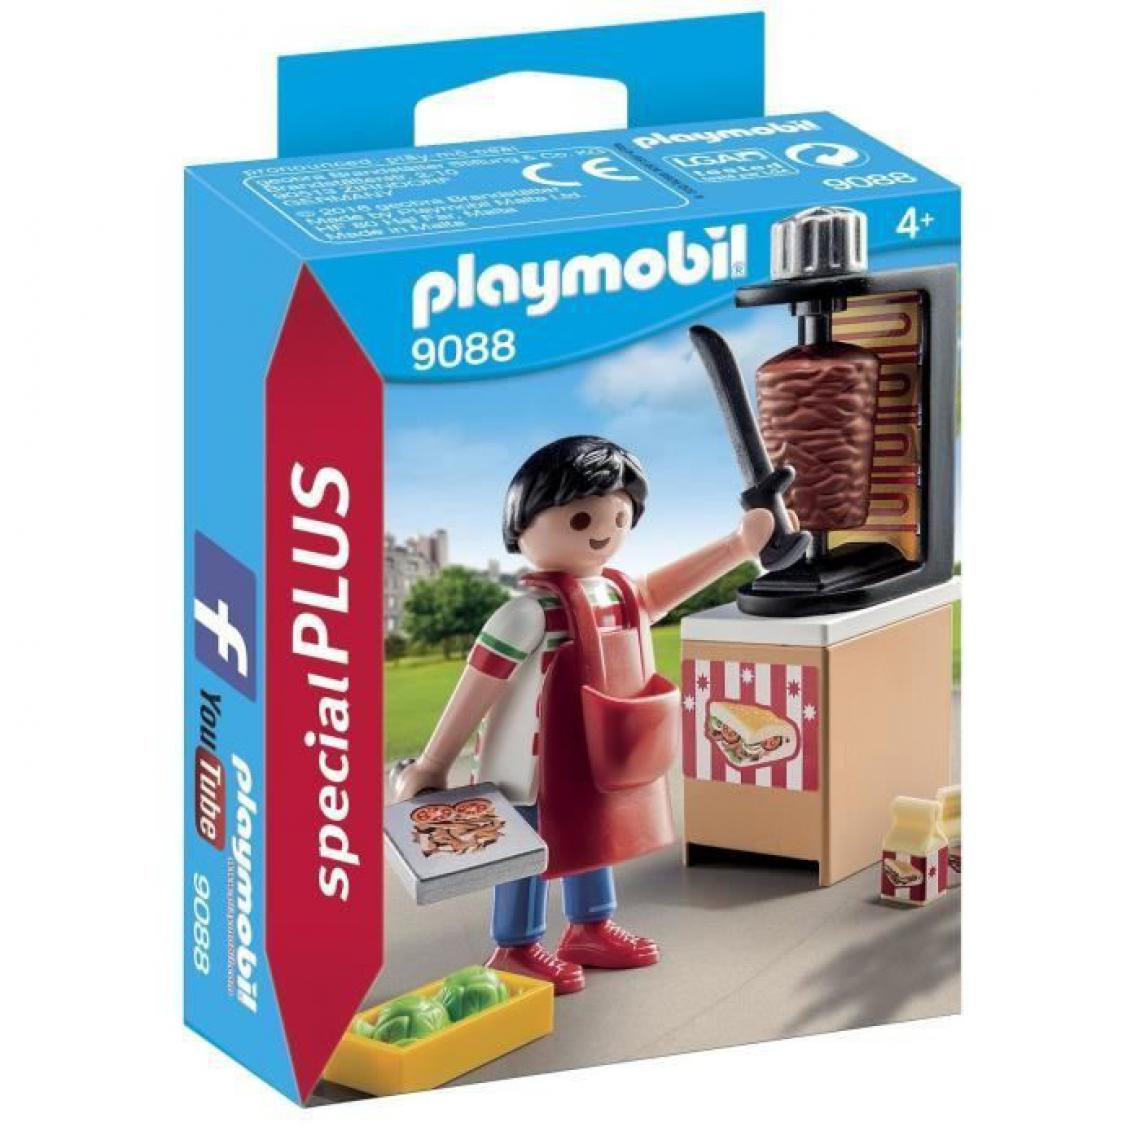 Playmobil - PLAYMOBIL 9088 - Vendeur de Kebab - Playmobil